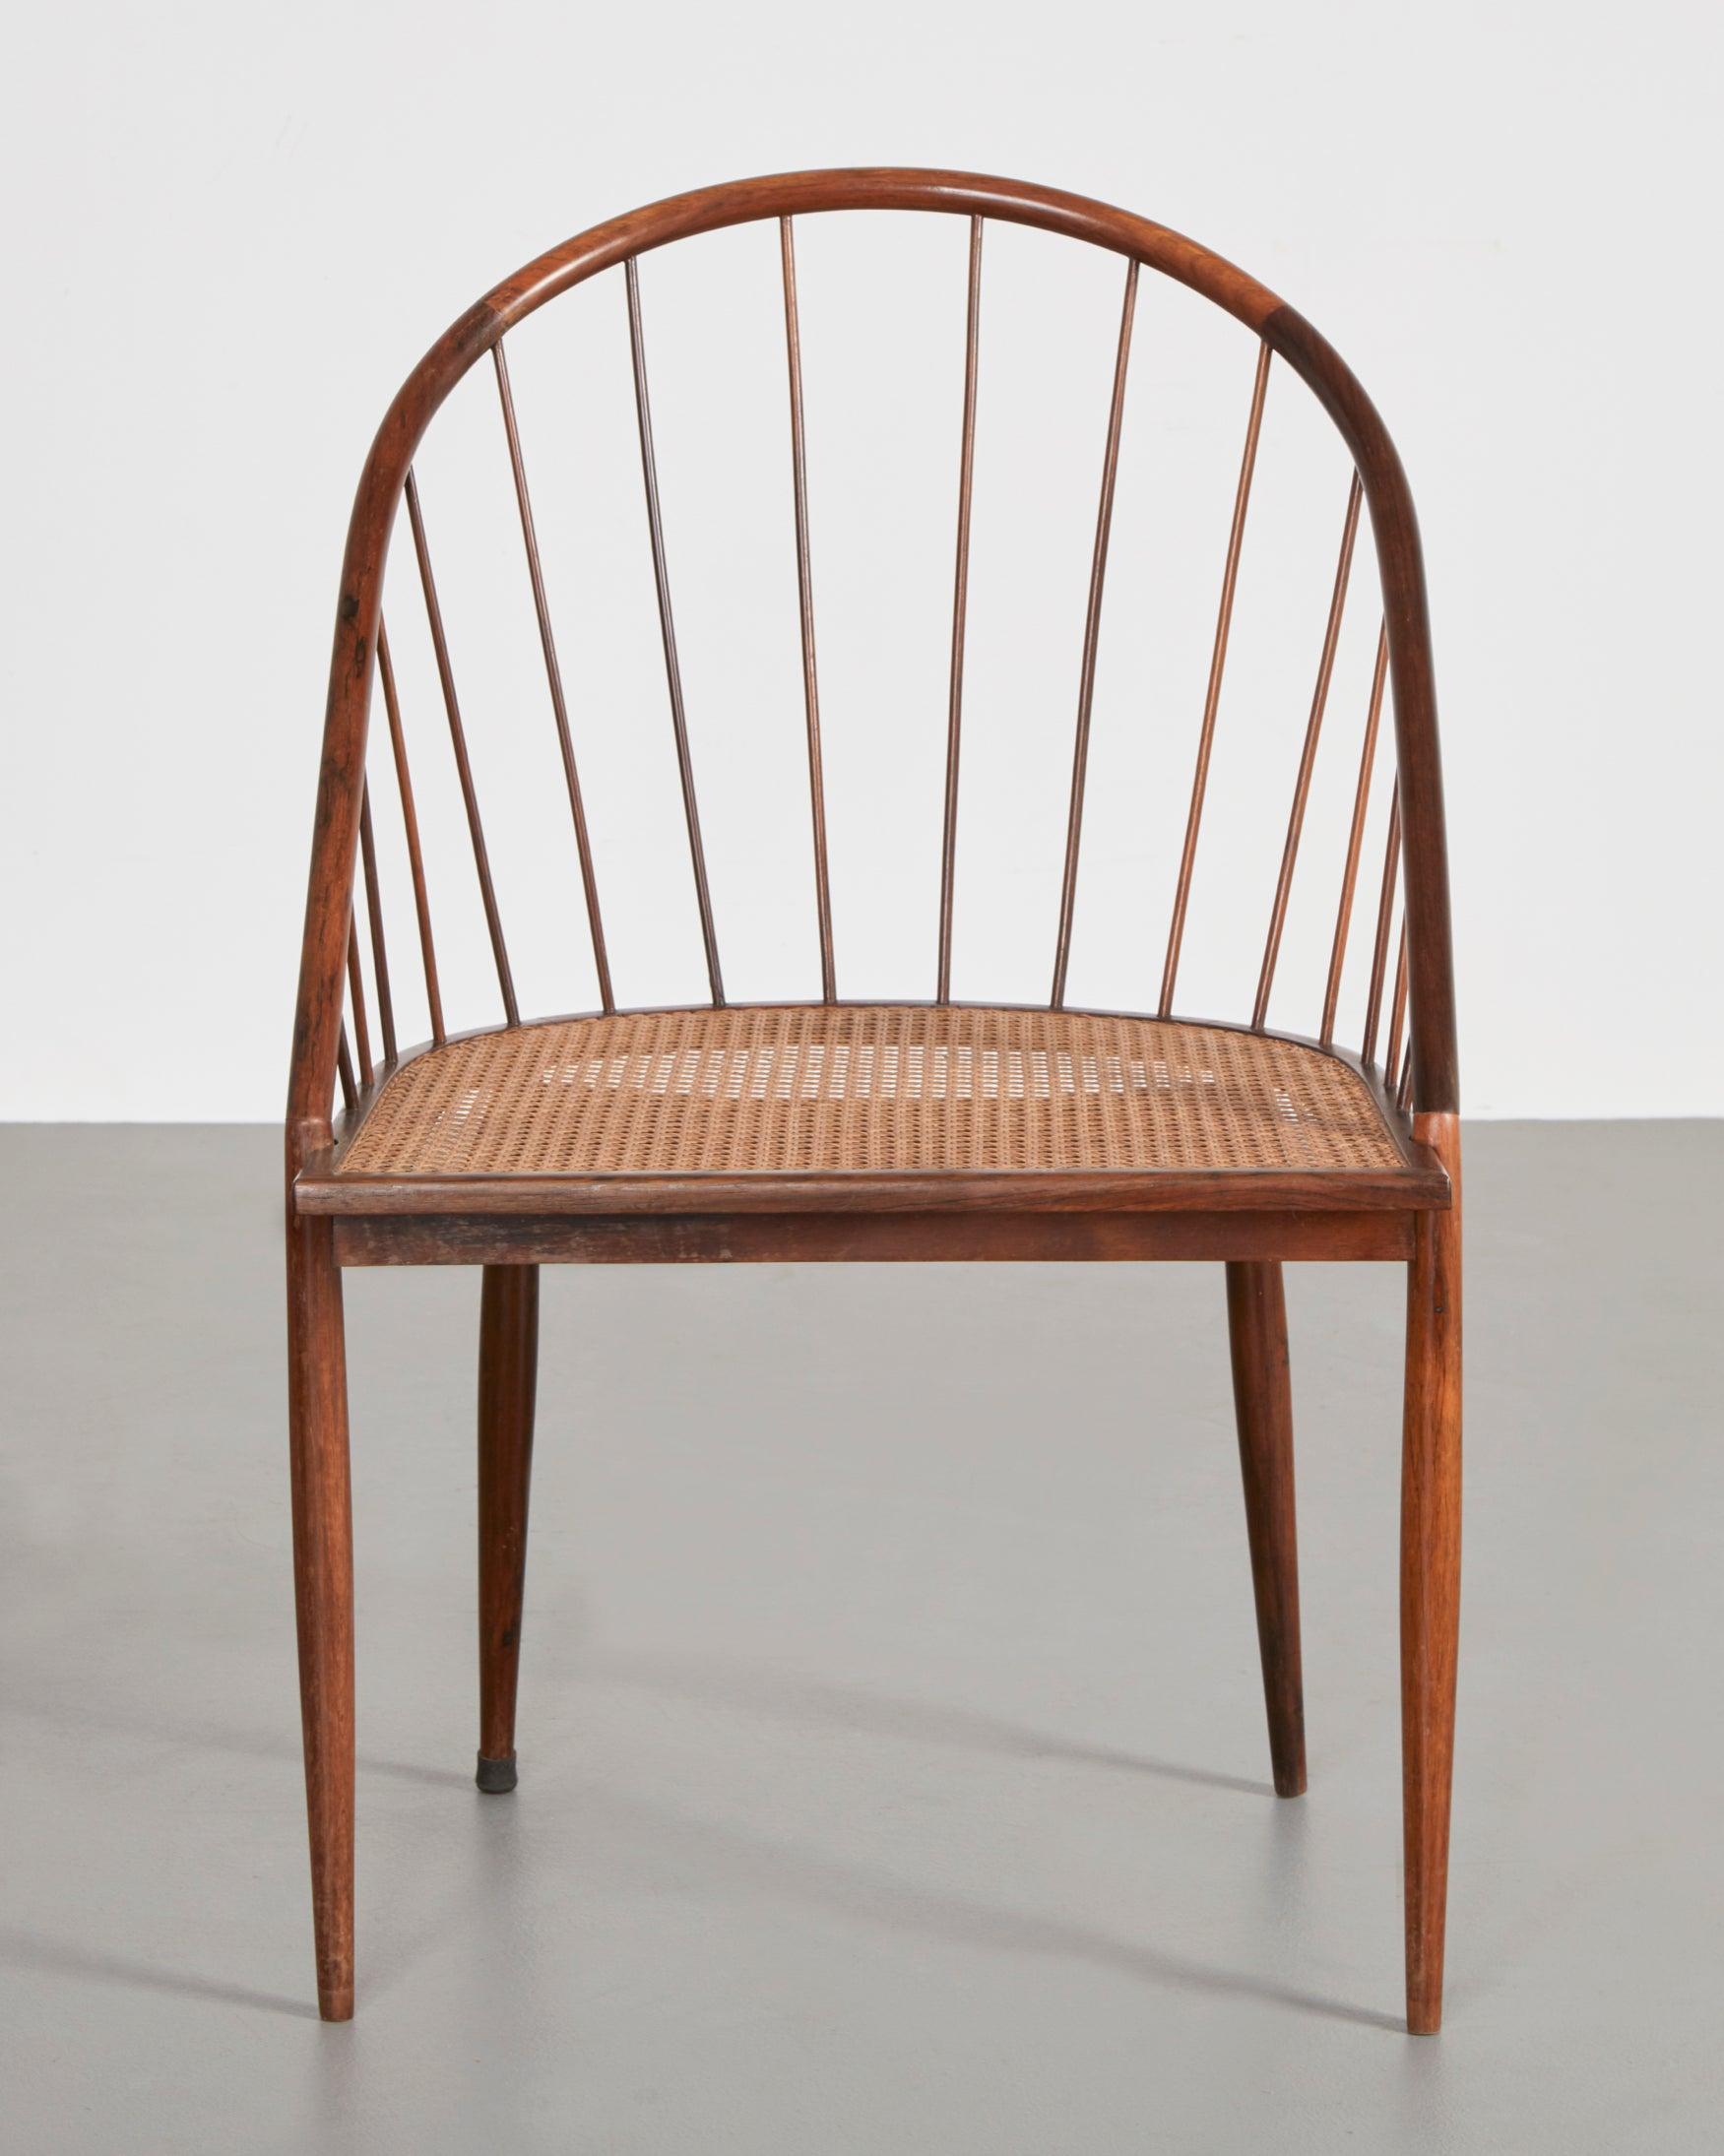 Brazilian Single Chair in Jacaranda Designed by Joaquim Tenreiro